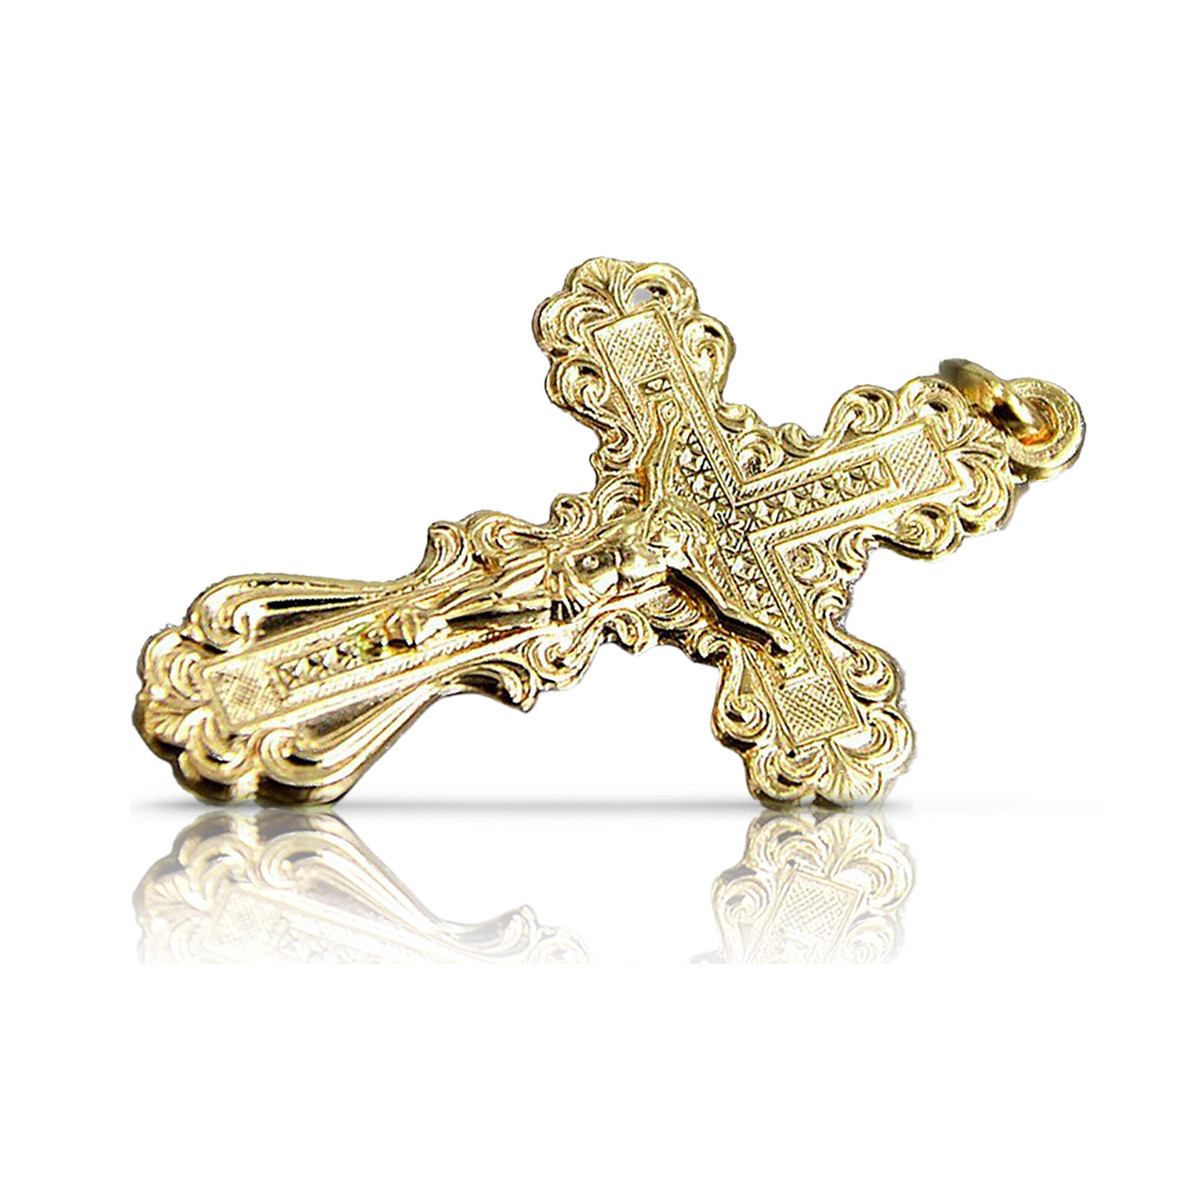 Золото Православный Крест ★ russiangold.com ★ Золото 585 333 Низкая цена